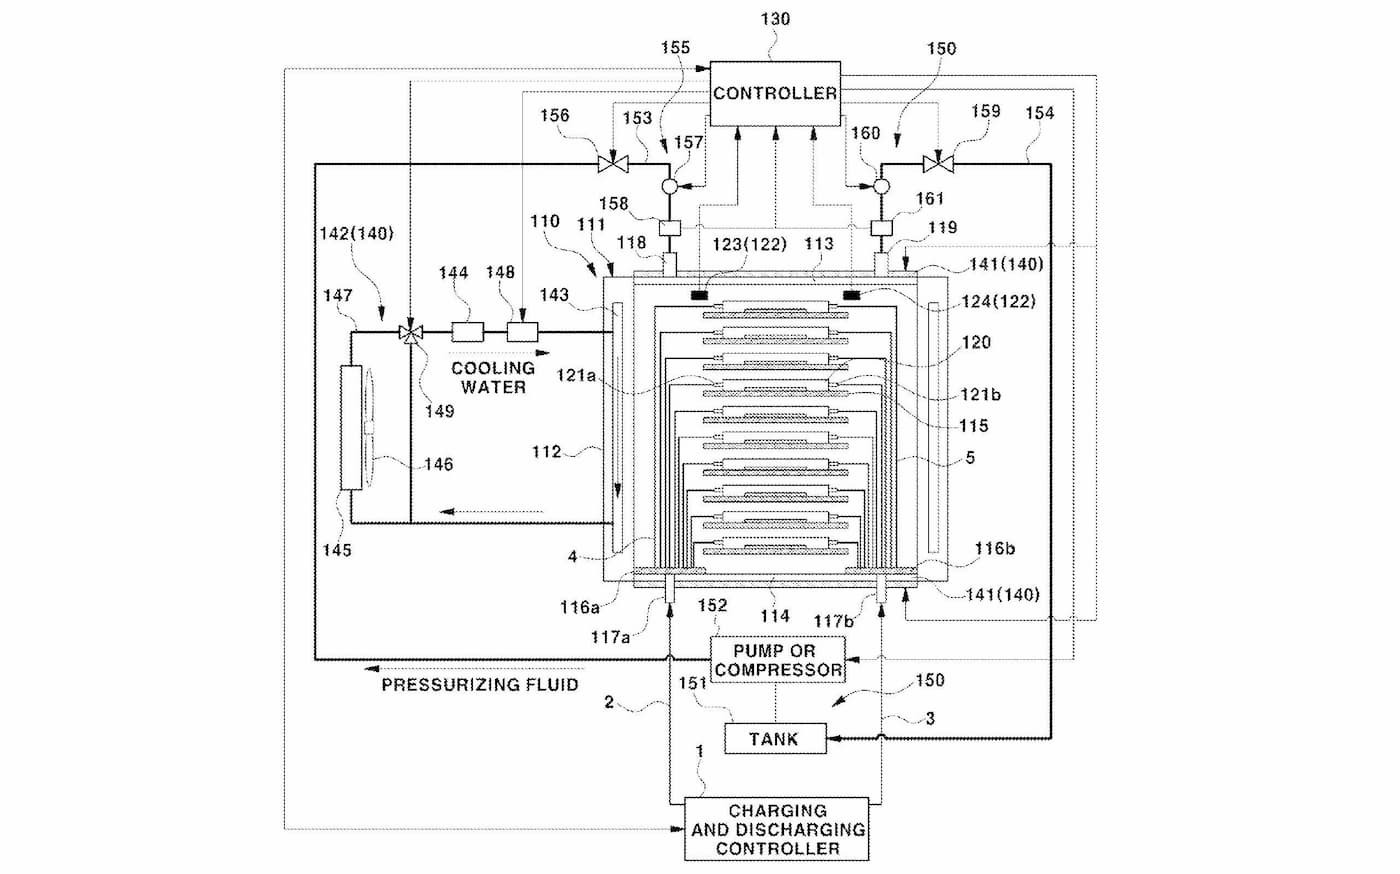 ヒュンダイ、加圧型全固体EVバッテリーの特許を取得